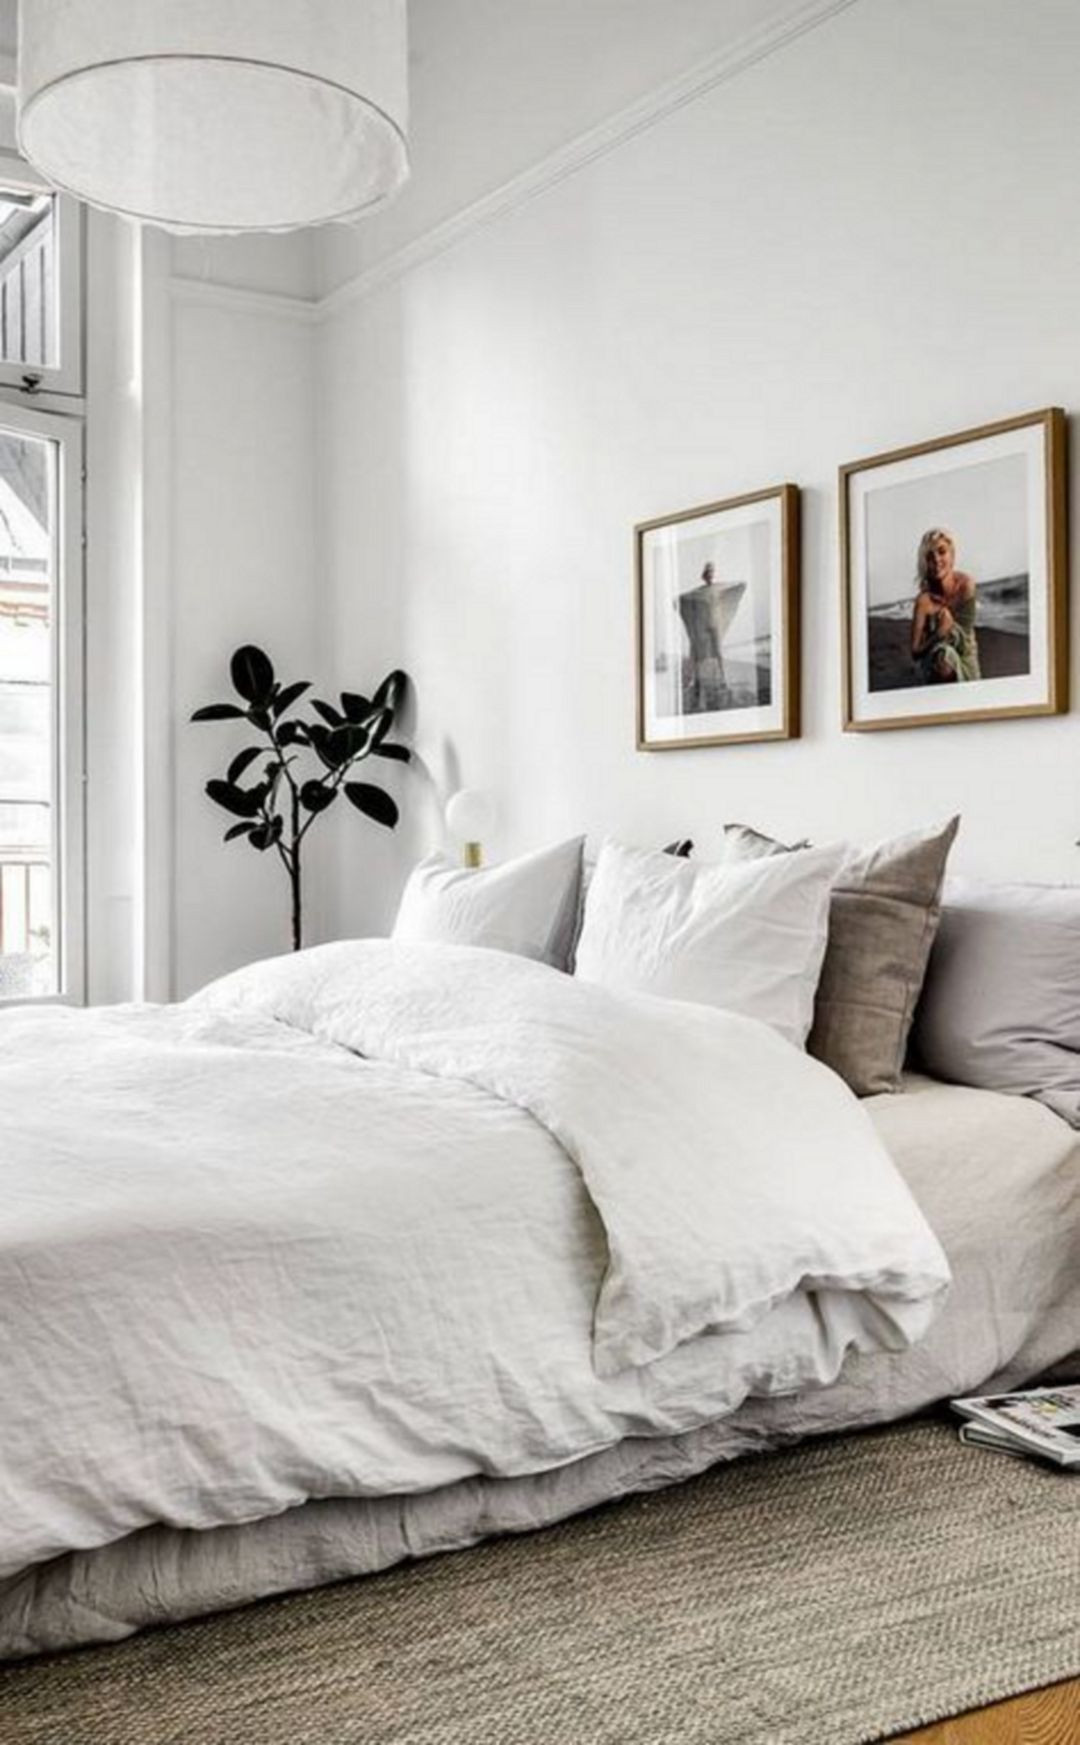 Minimalist Bedroom Decor
 Amazing Minimalist Bedroom Design Ideas 113 – DECORATHING